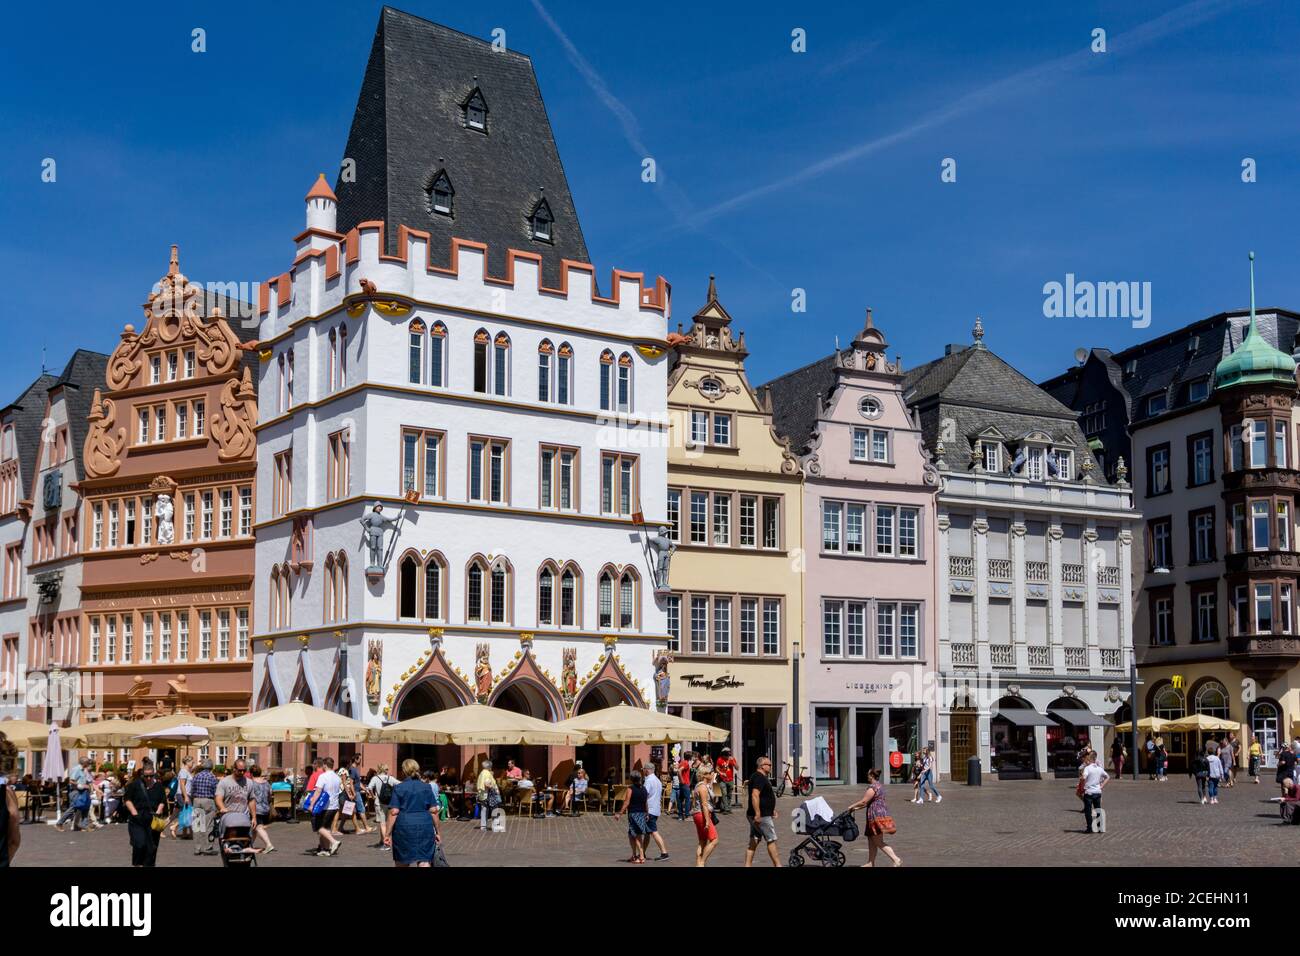 Trèves, RP / Allemagne - 29 juillet 2020 : vue sur la place Hauptmarkt dans la vieille ville historique de Trèves sur la Moselle Banque D'Images